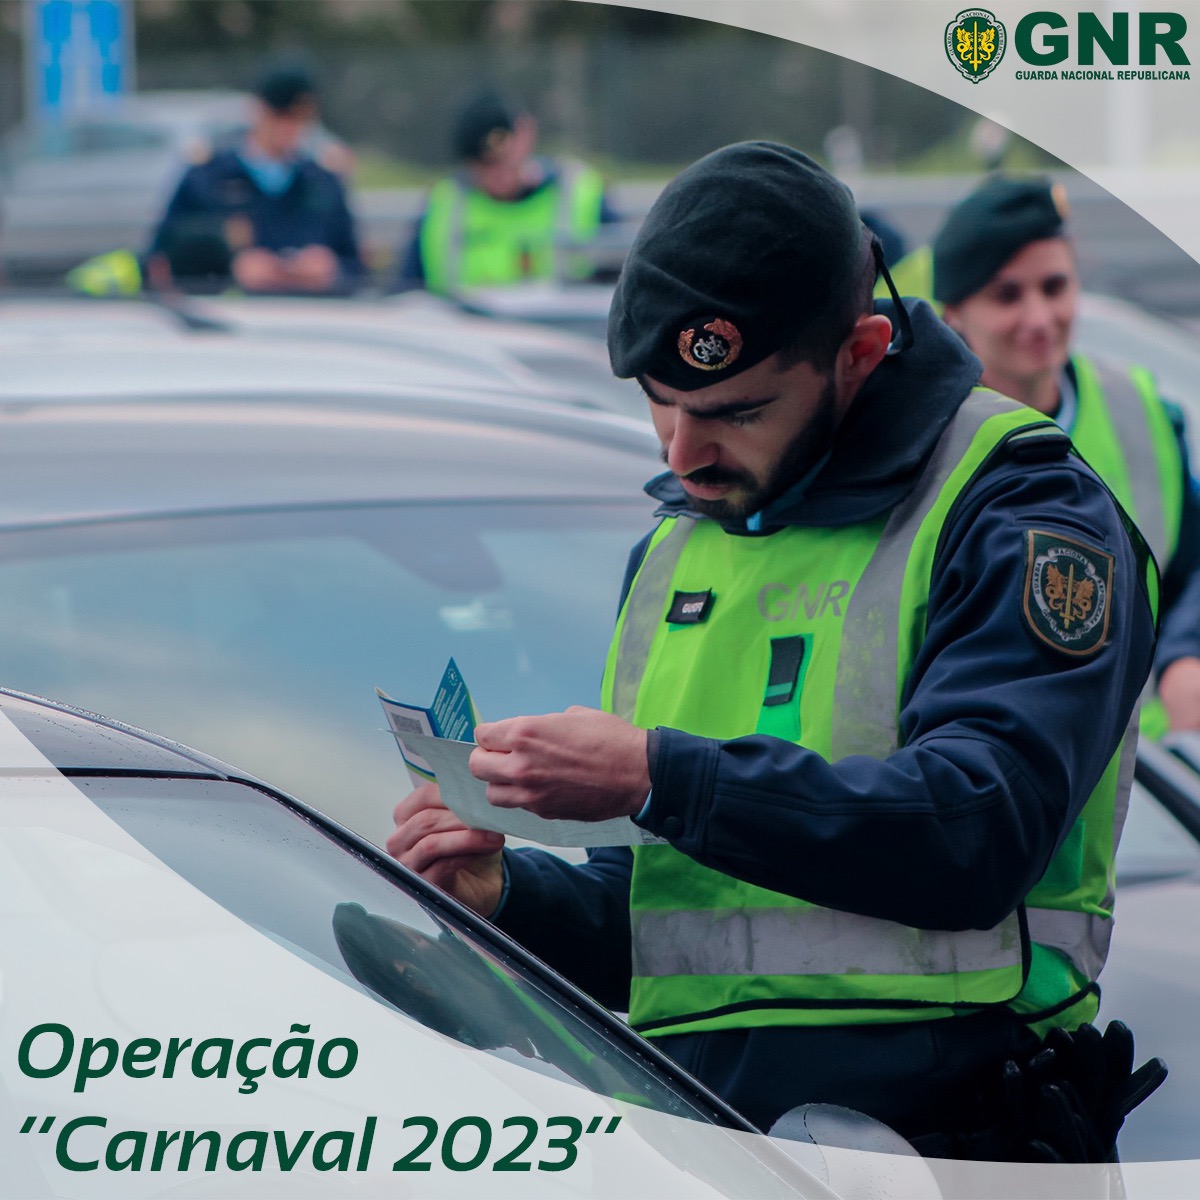 Operação “Carnaval 2023” - Balanço